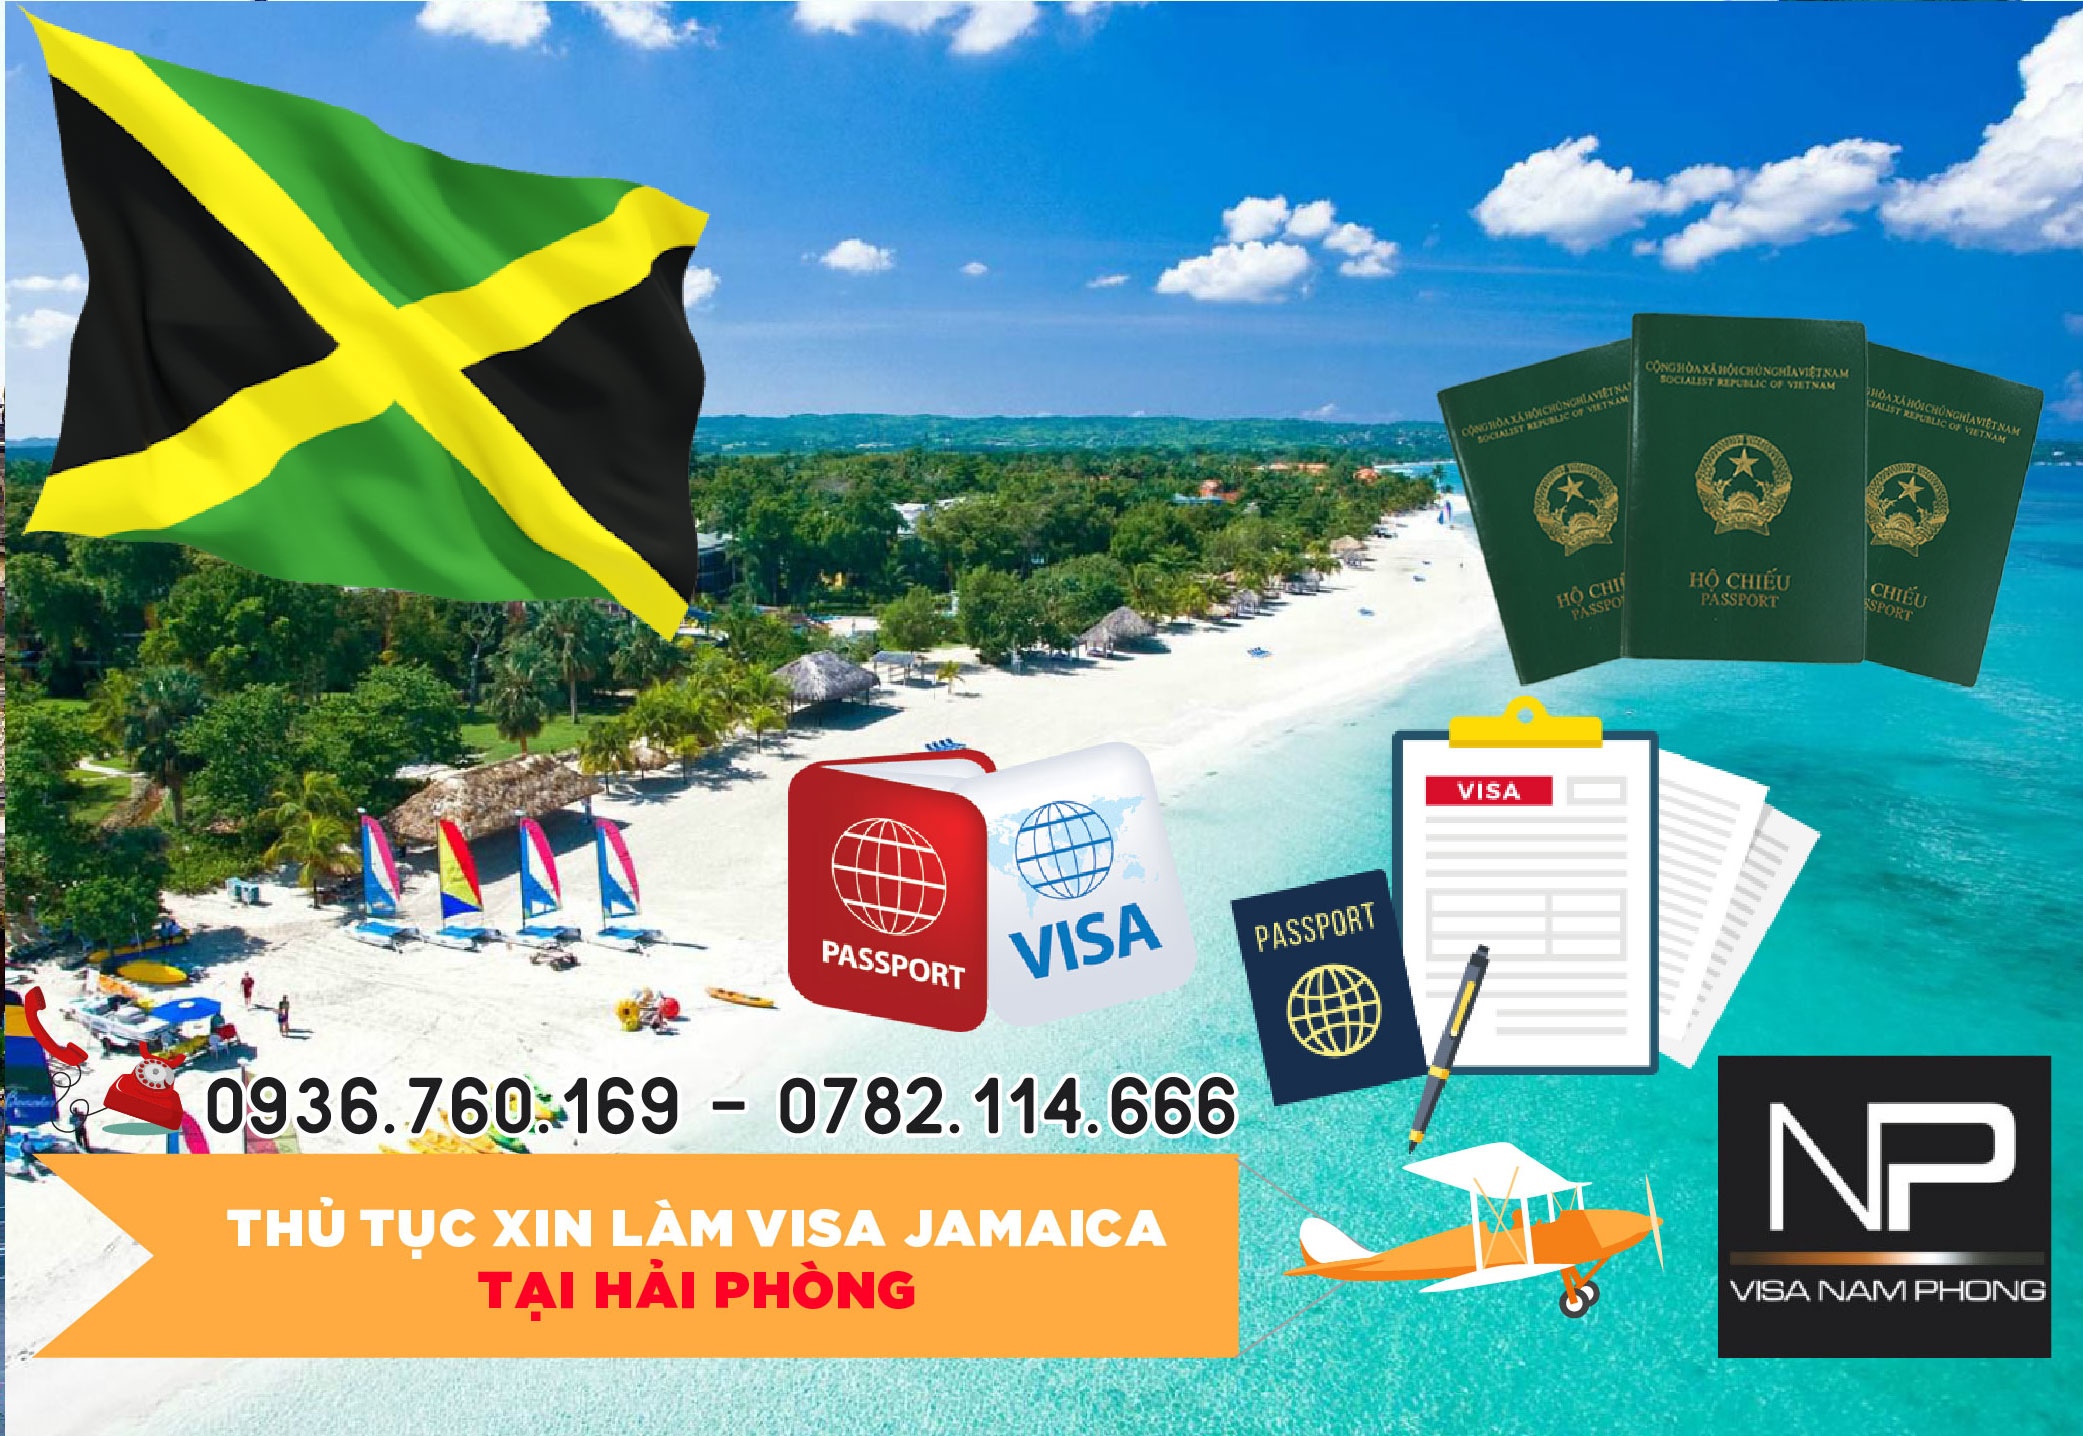 Thủ tục xin làm visa Jamaica tại Hải Phòng